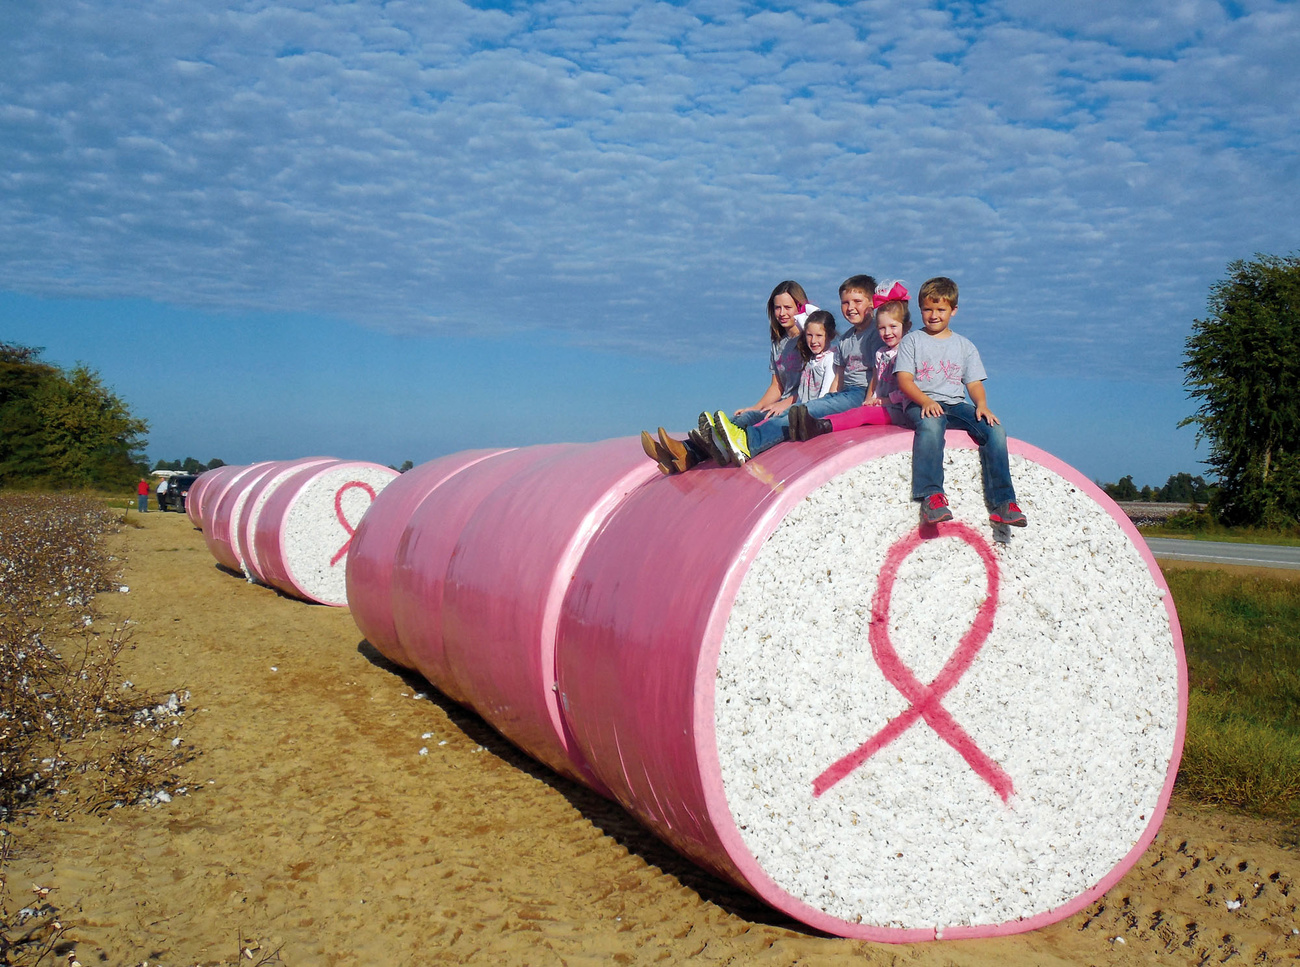 在美國，乳癌早篩的宣傳活動從不低調，2013年密蘇裡州(Missouri)這片棉花地上的設計就是如此。